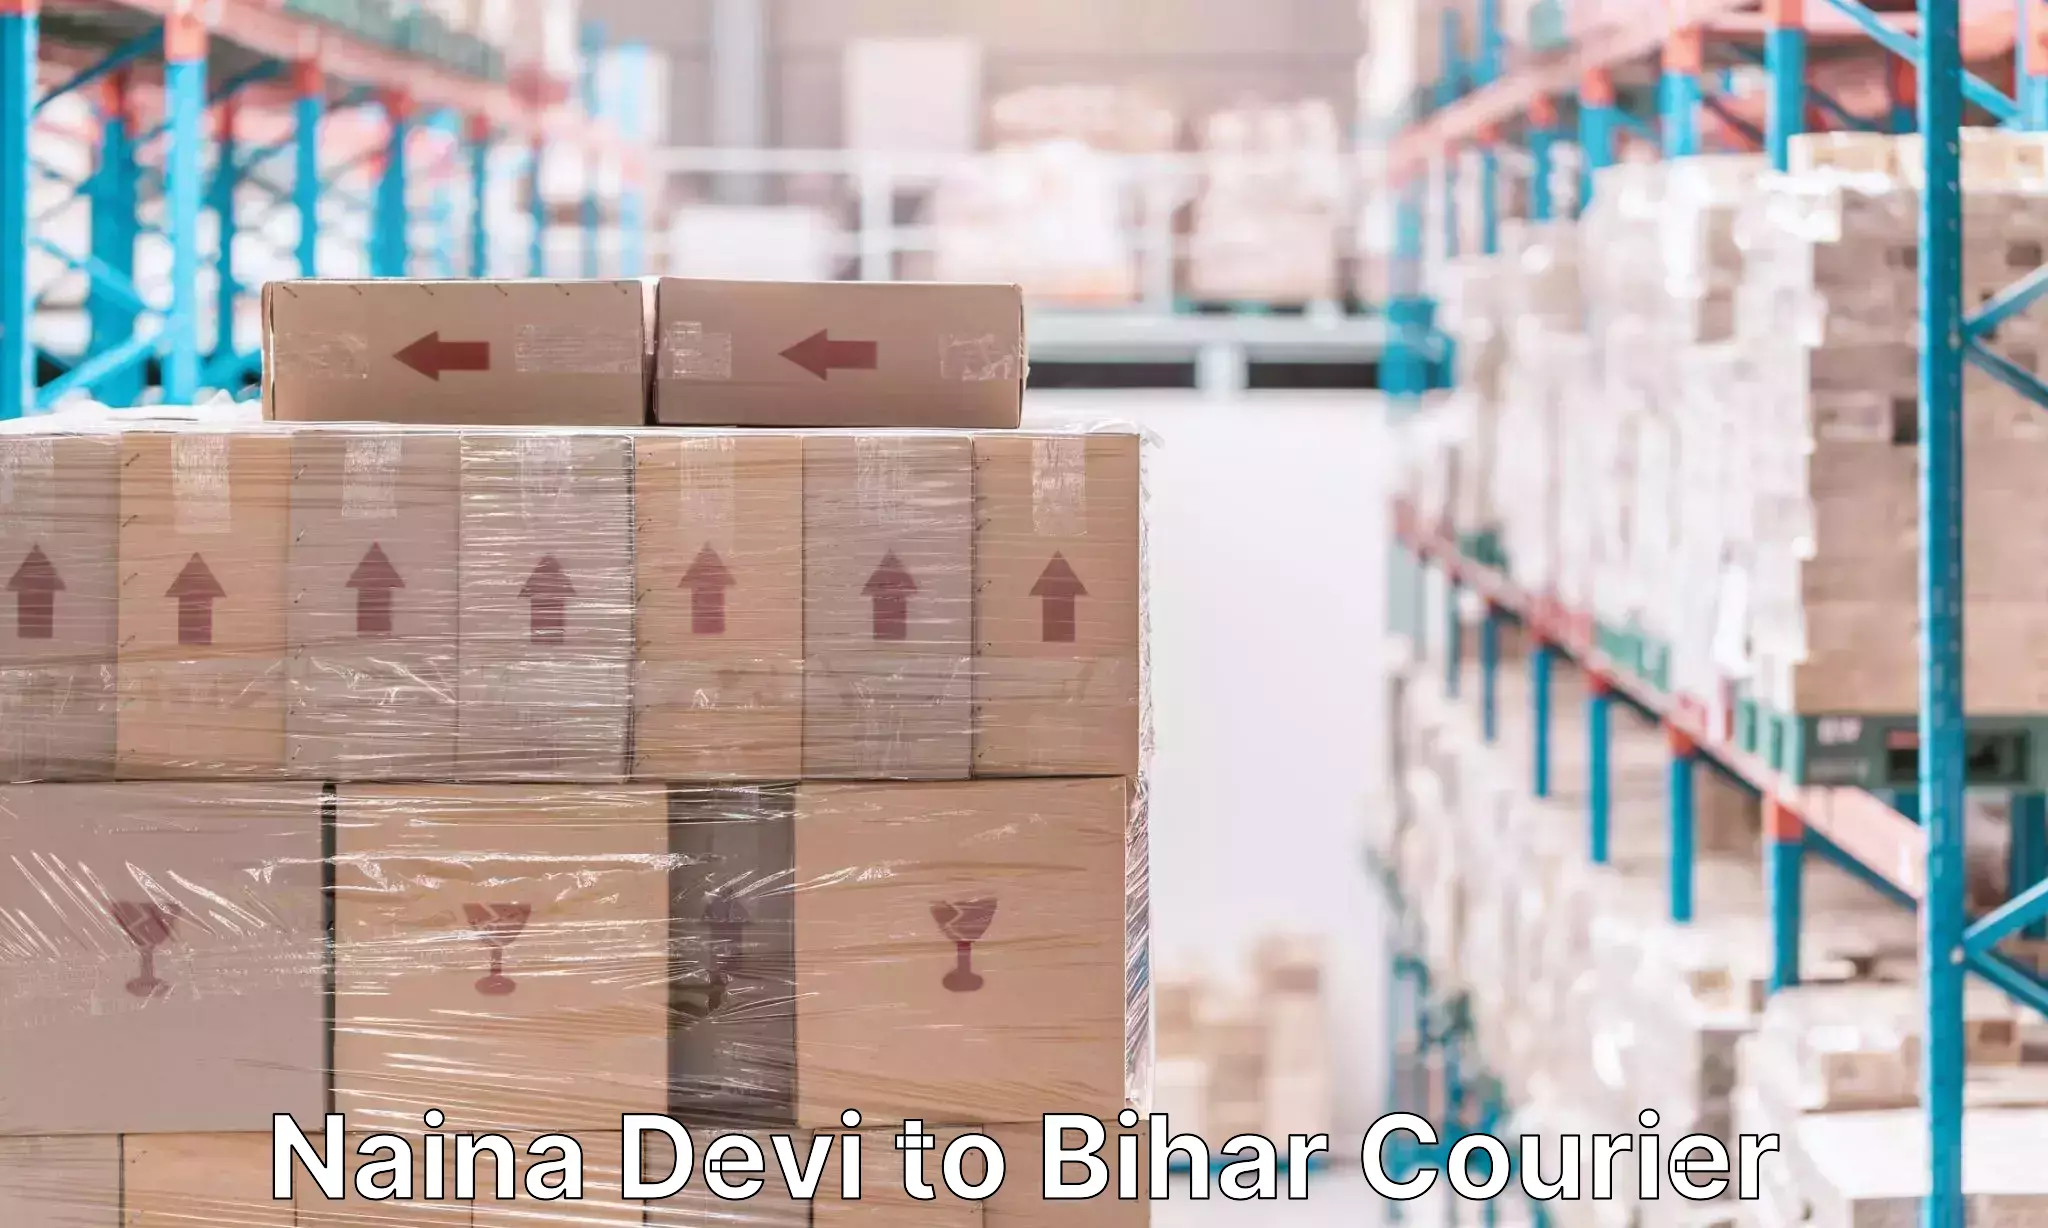 Luggage delivery estimate Naina Devi to Bihar